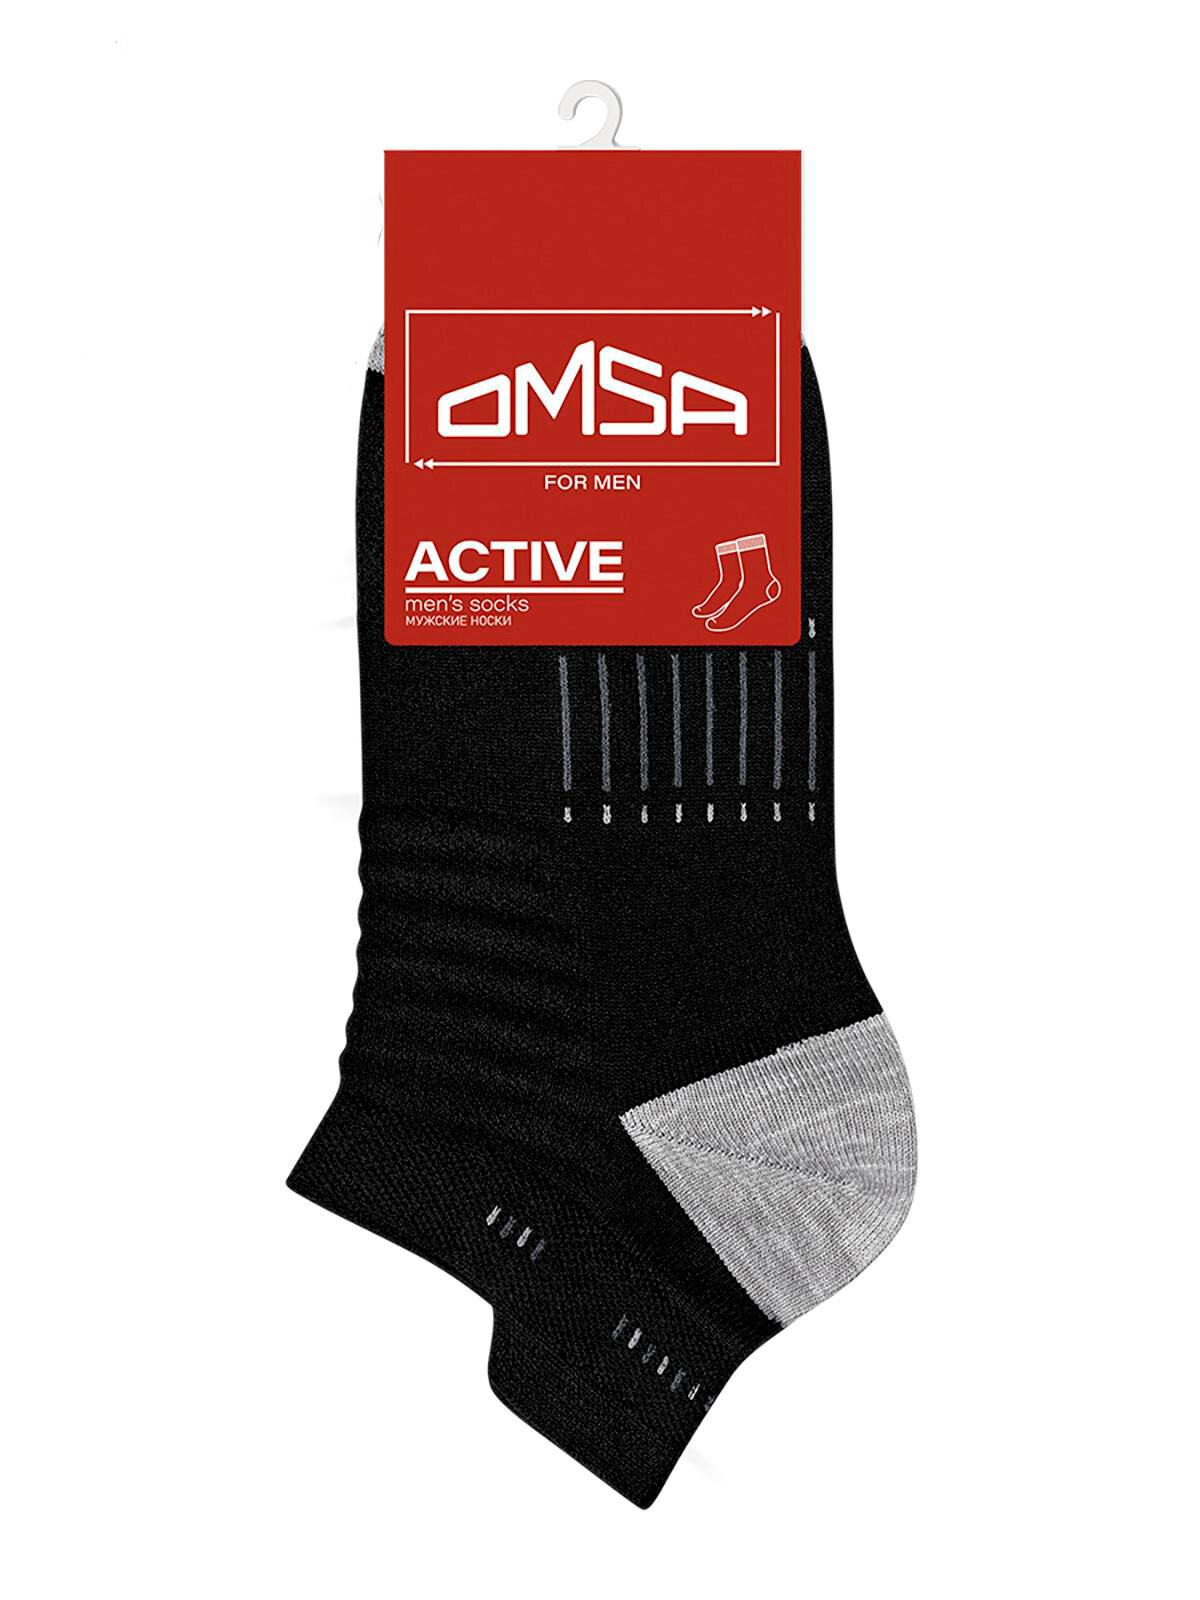 Мужские и женские короткие спортивные носки Omsa Art. 123 active